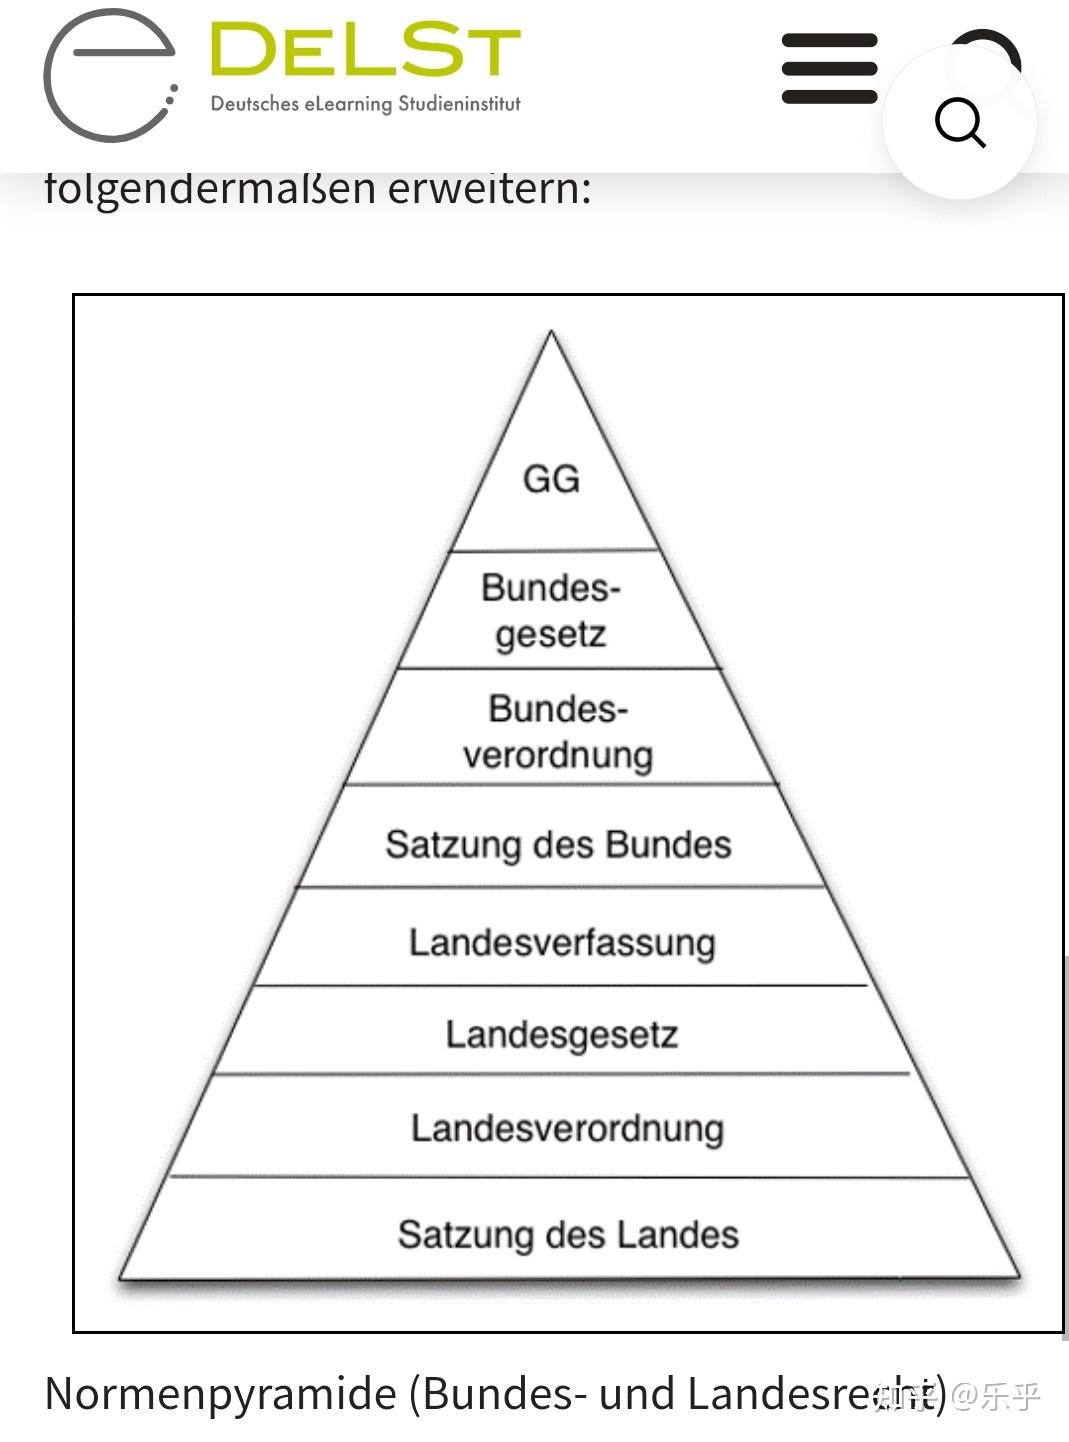 德国法律的效力位阶和法条组成